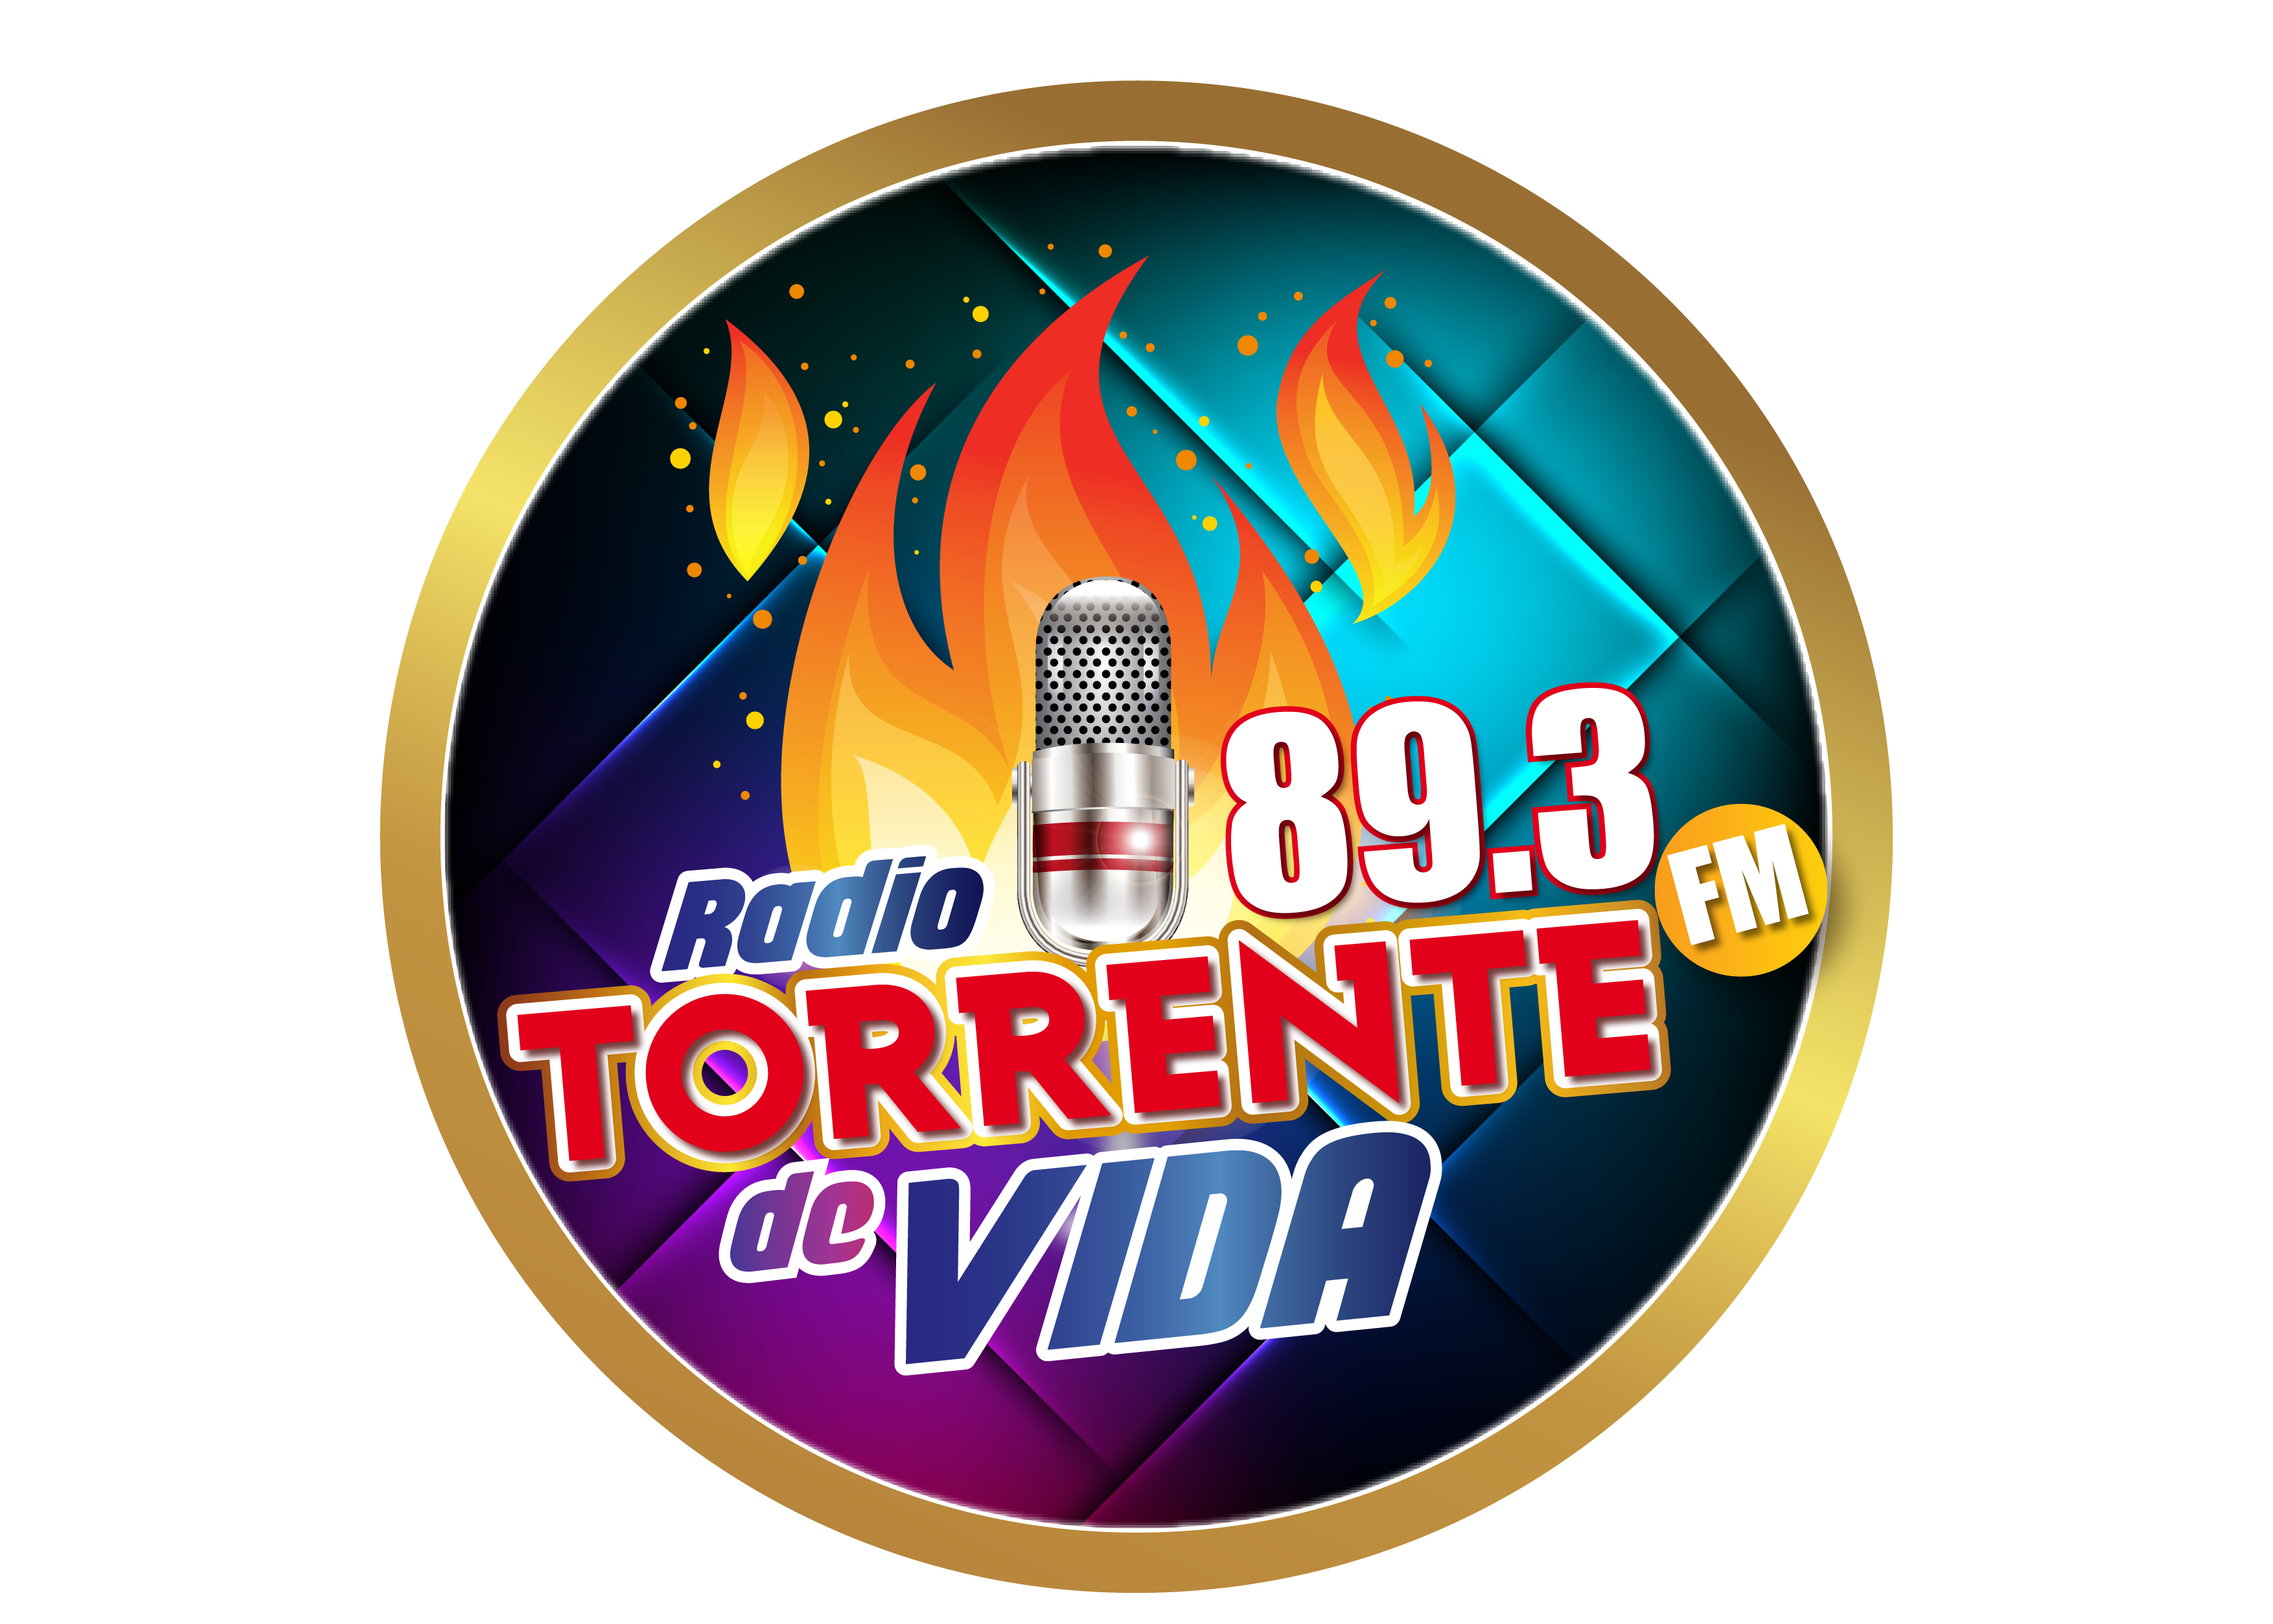 Contact - Radio Torrente de Vida